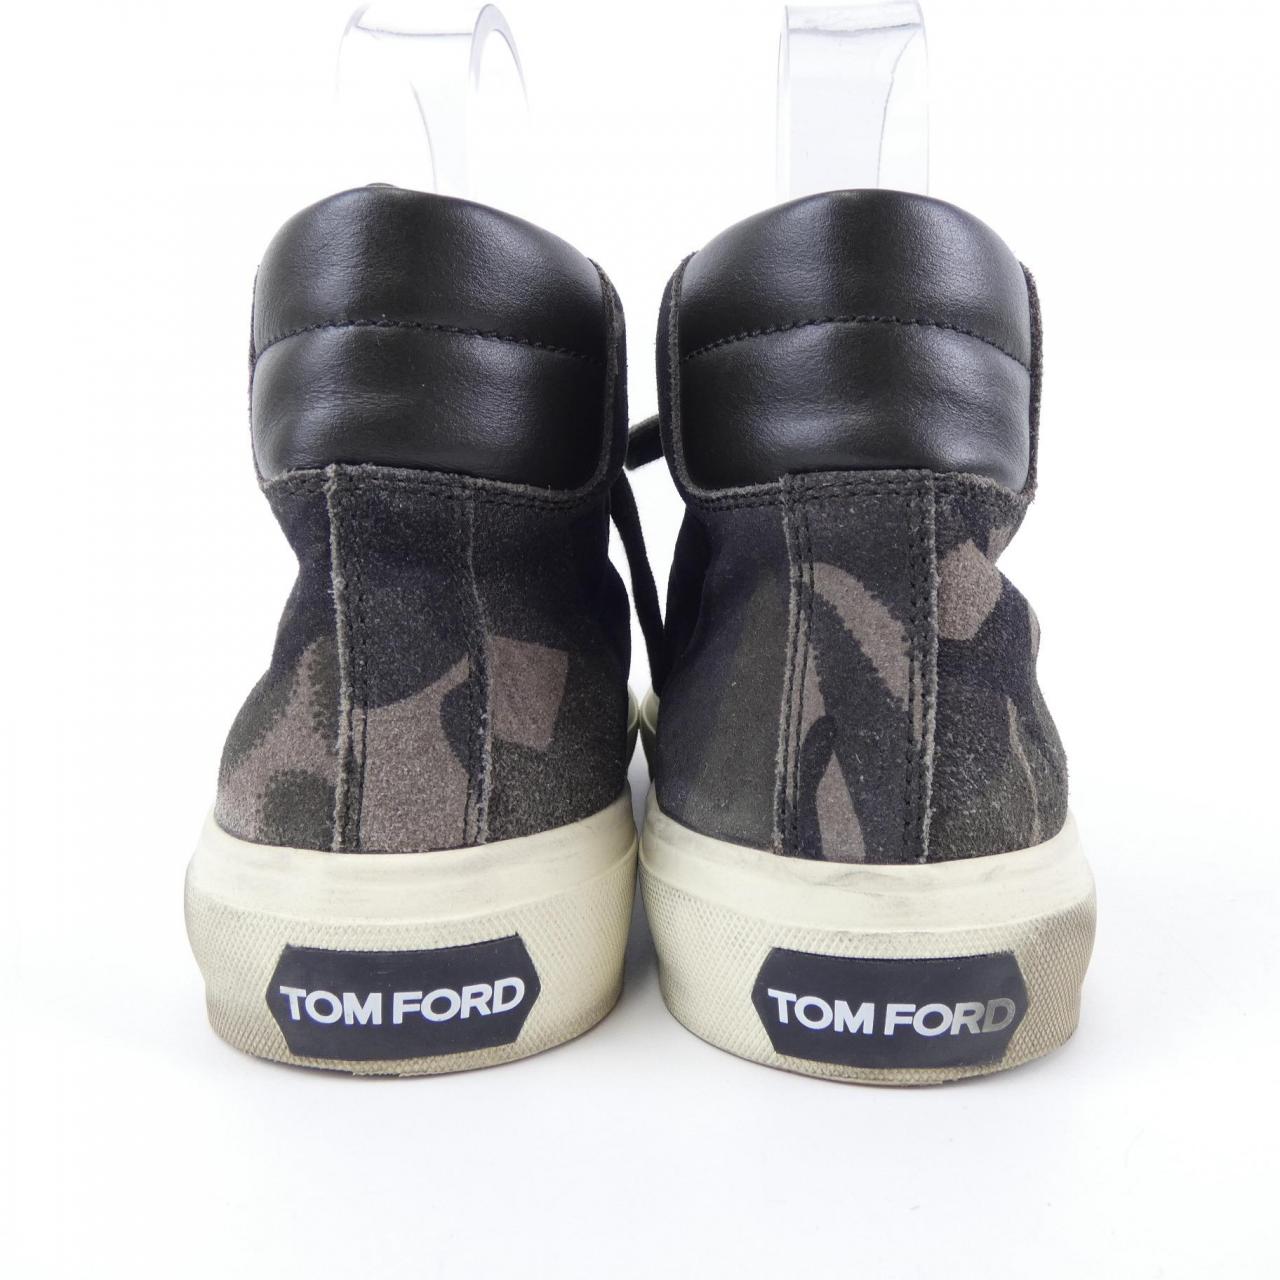 TOM FORD TOM FORD 低幫運動鞋